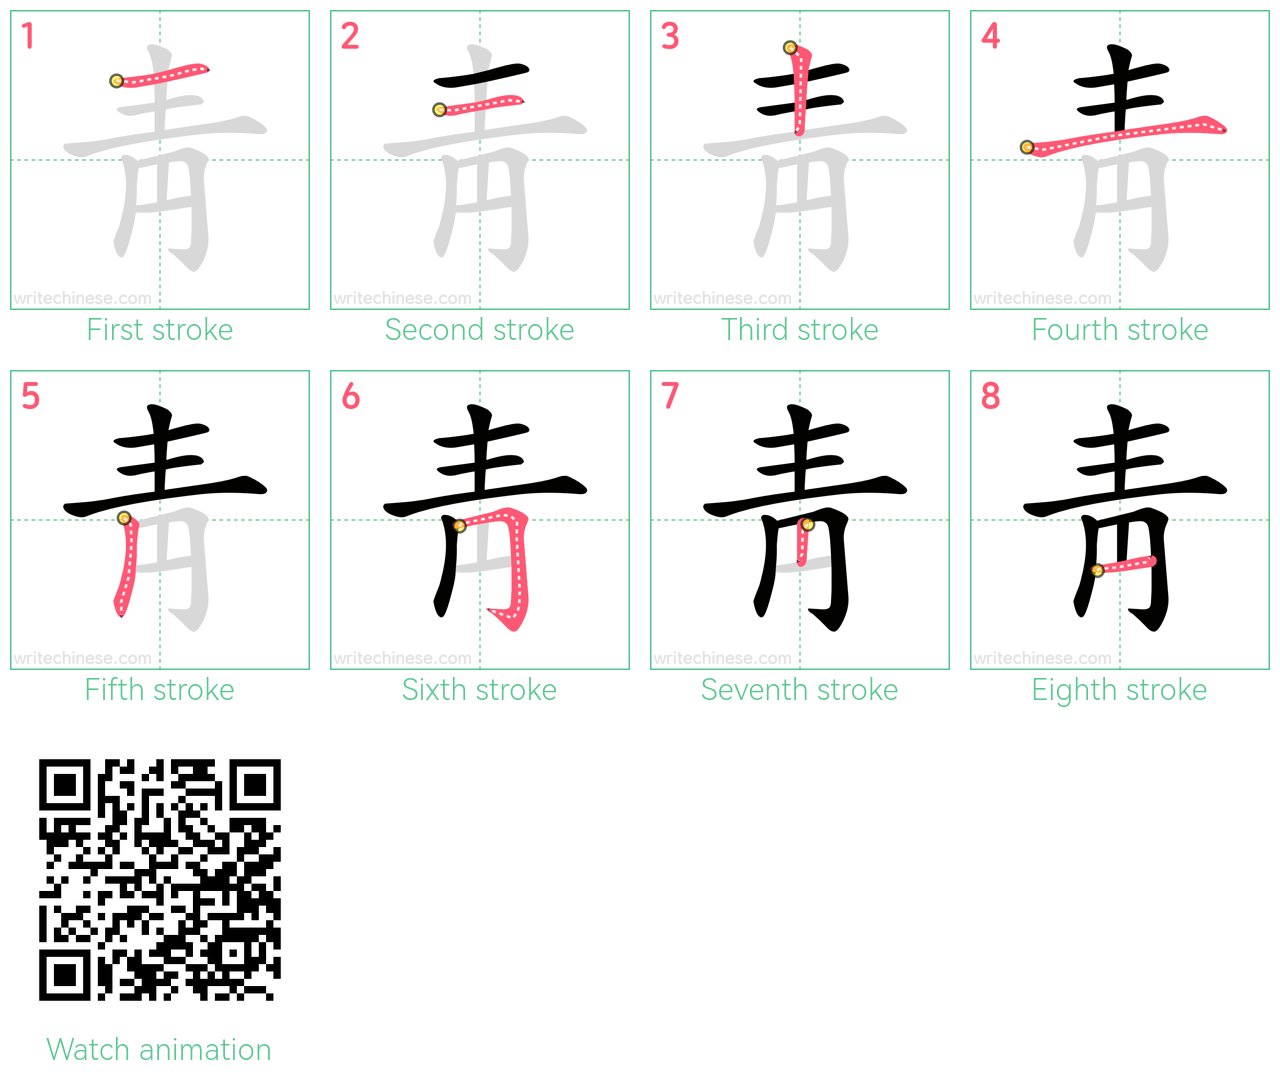 靑 step-by-step stroke order diagrams